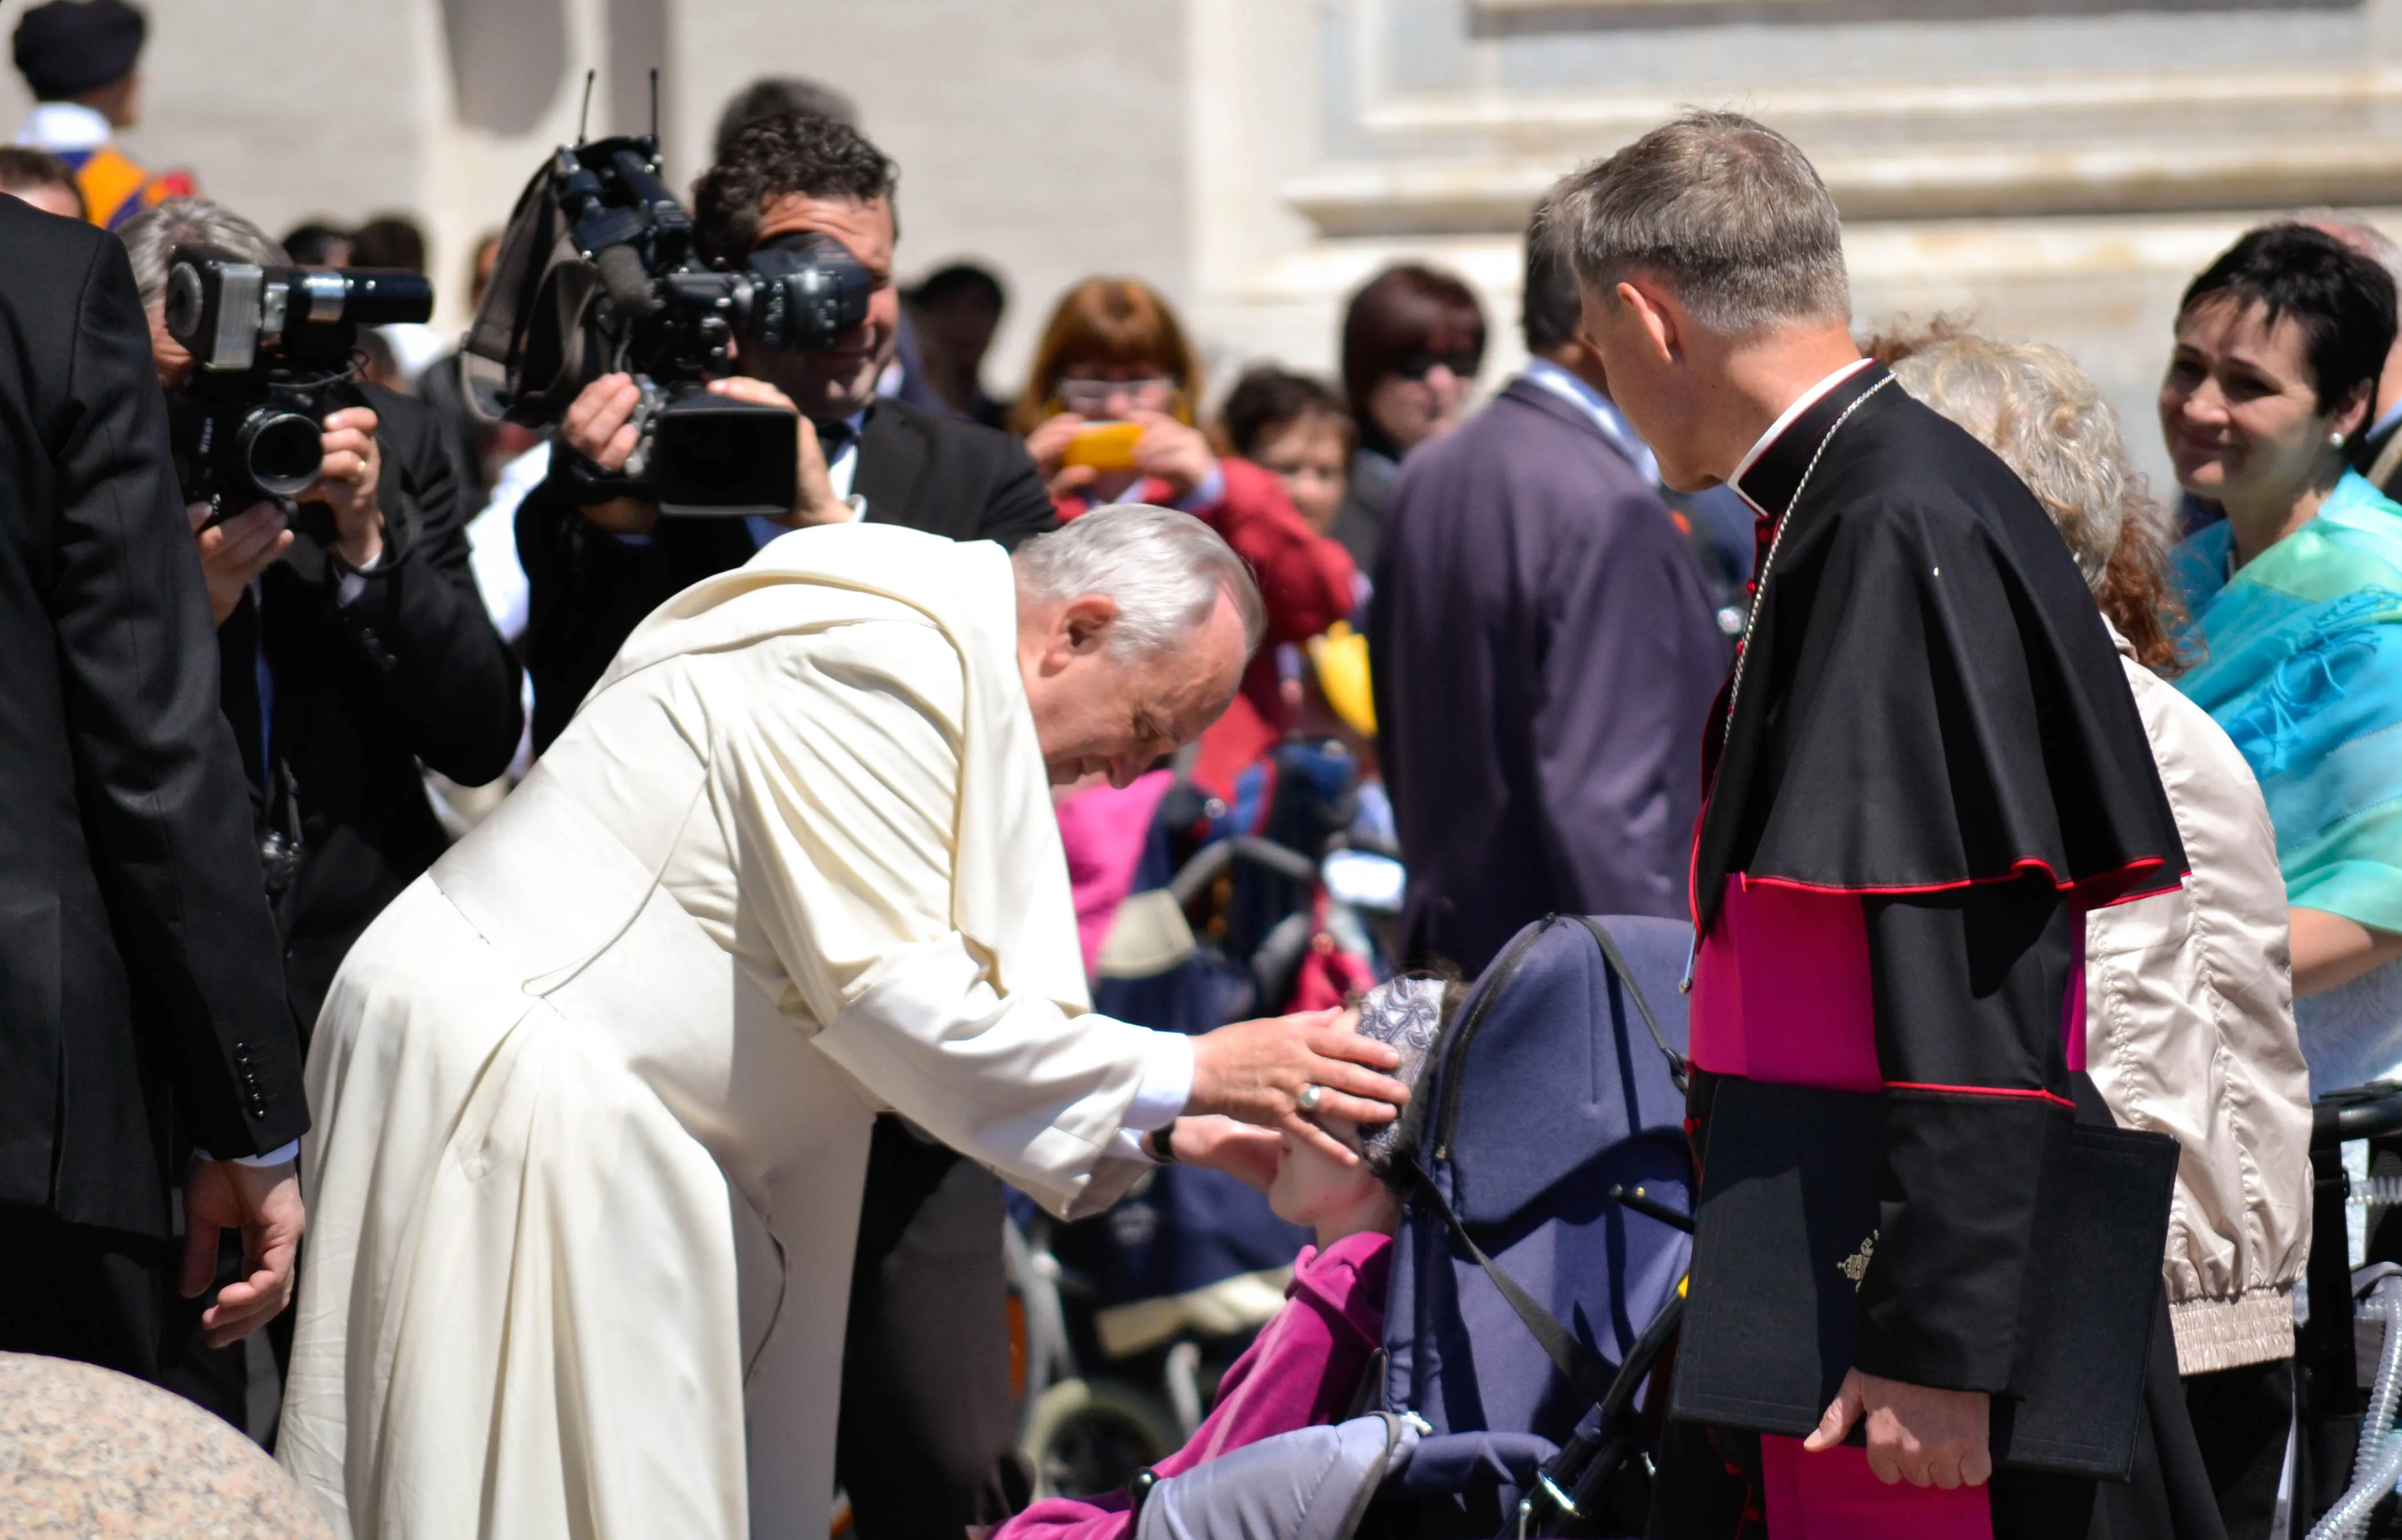 El Papa bendice a un enfermo. Foto referencial. Crédito: Daniel Ibáñez / ACI Prensa?w=200&h=150